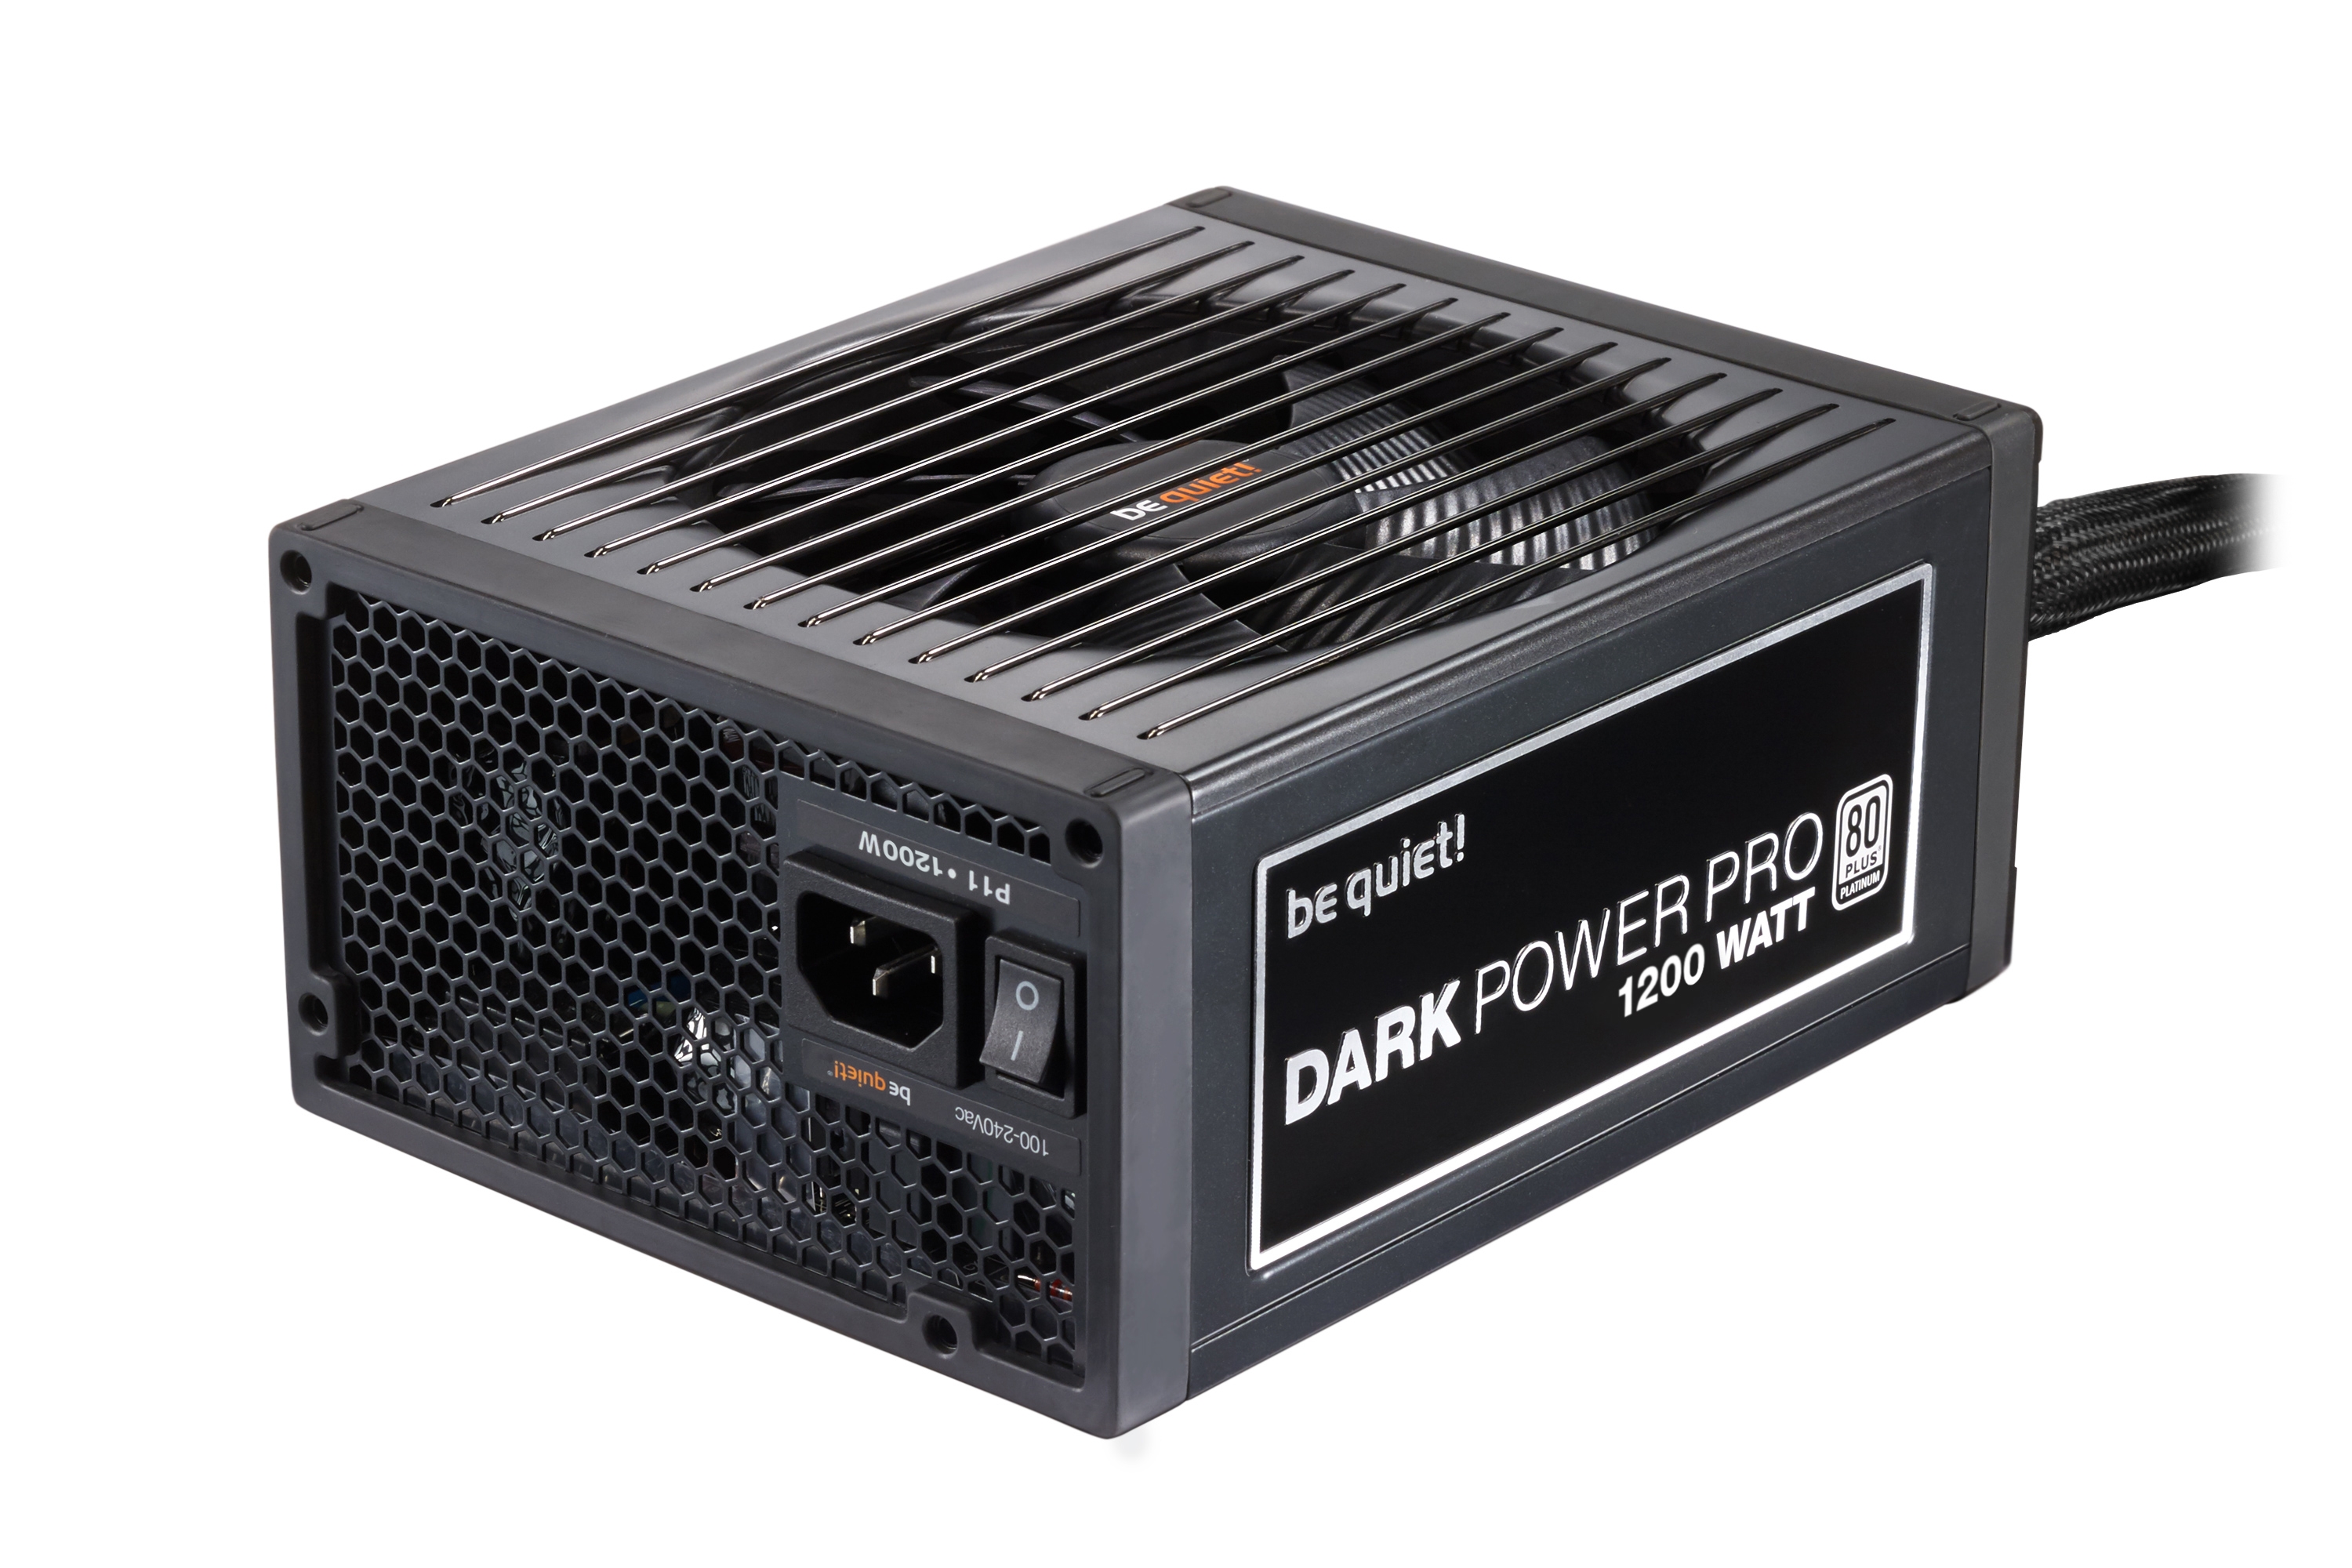 Be quiet! Dark Power Pro 11 1200W BN255